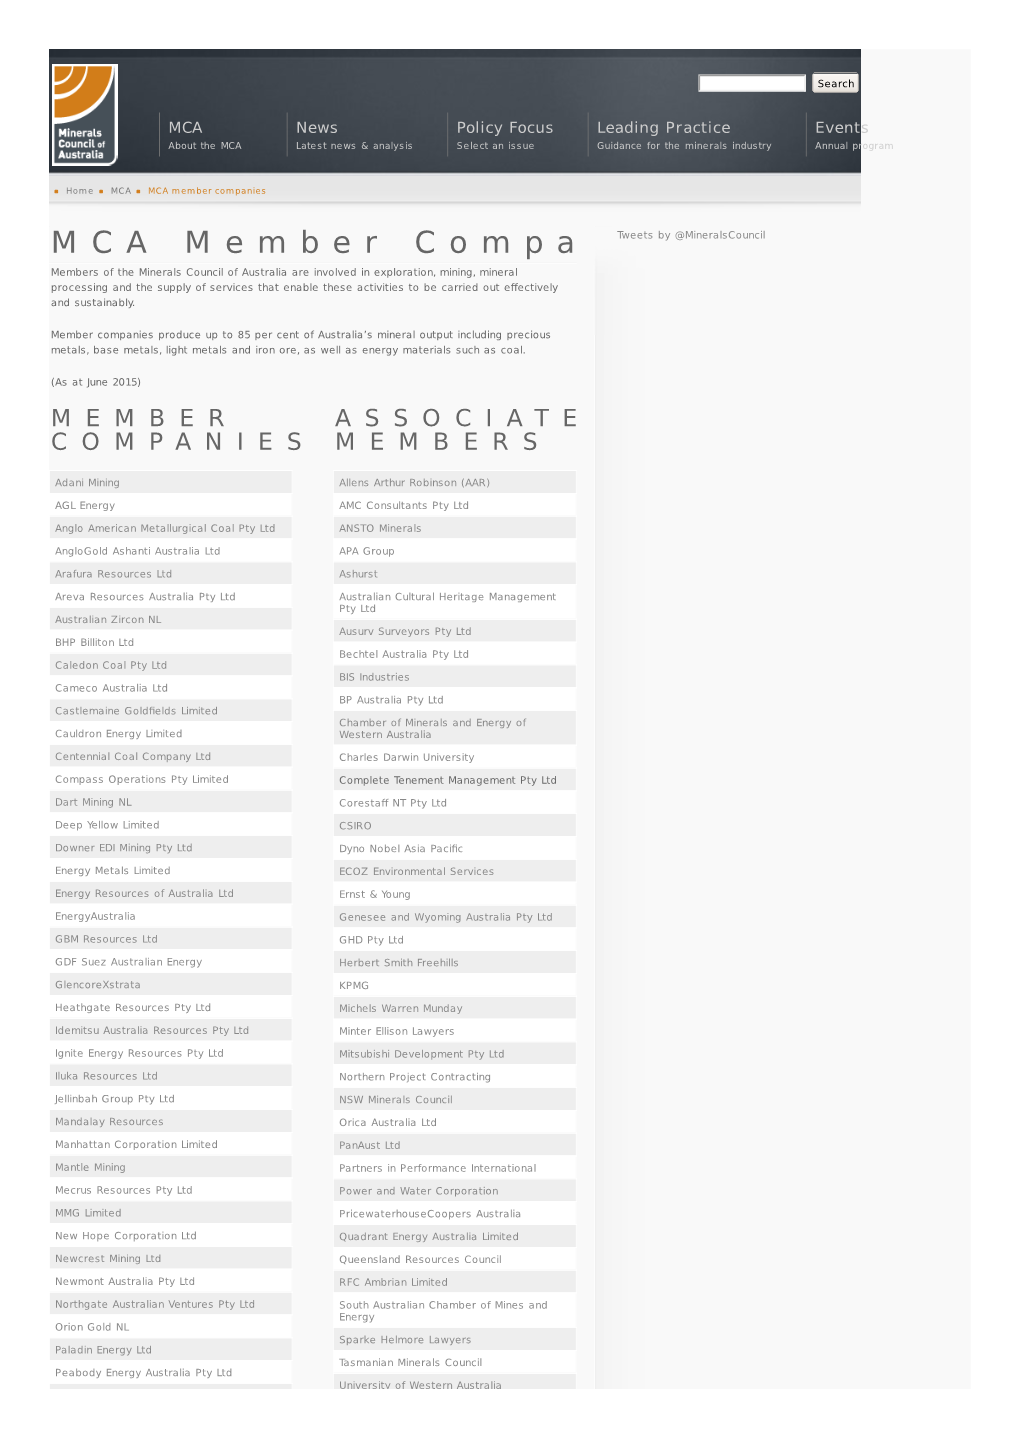 MCA Member Companies